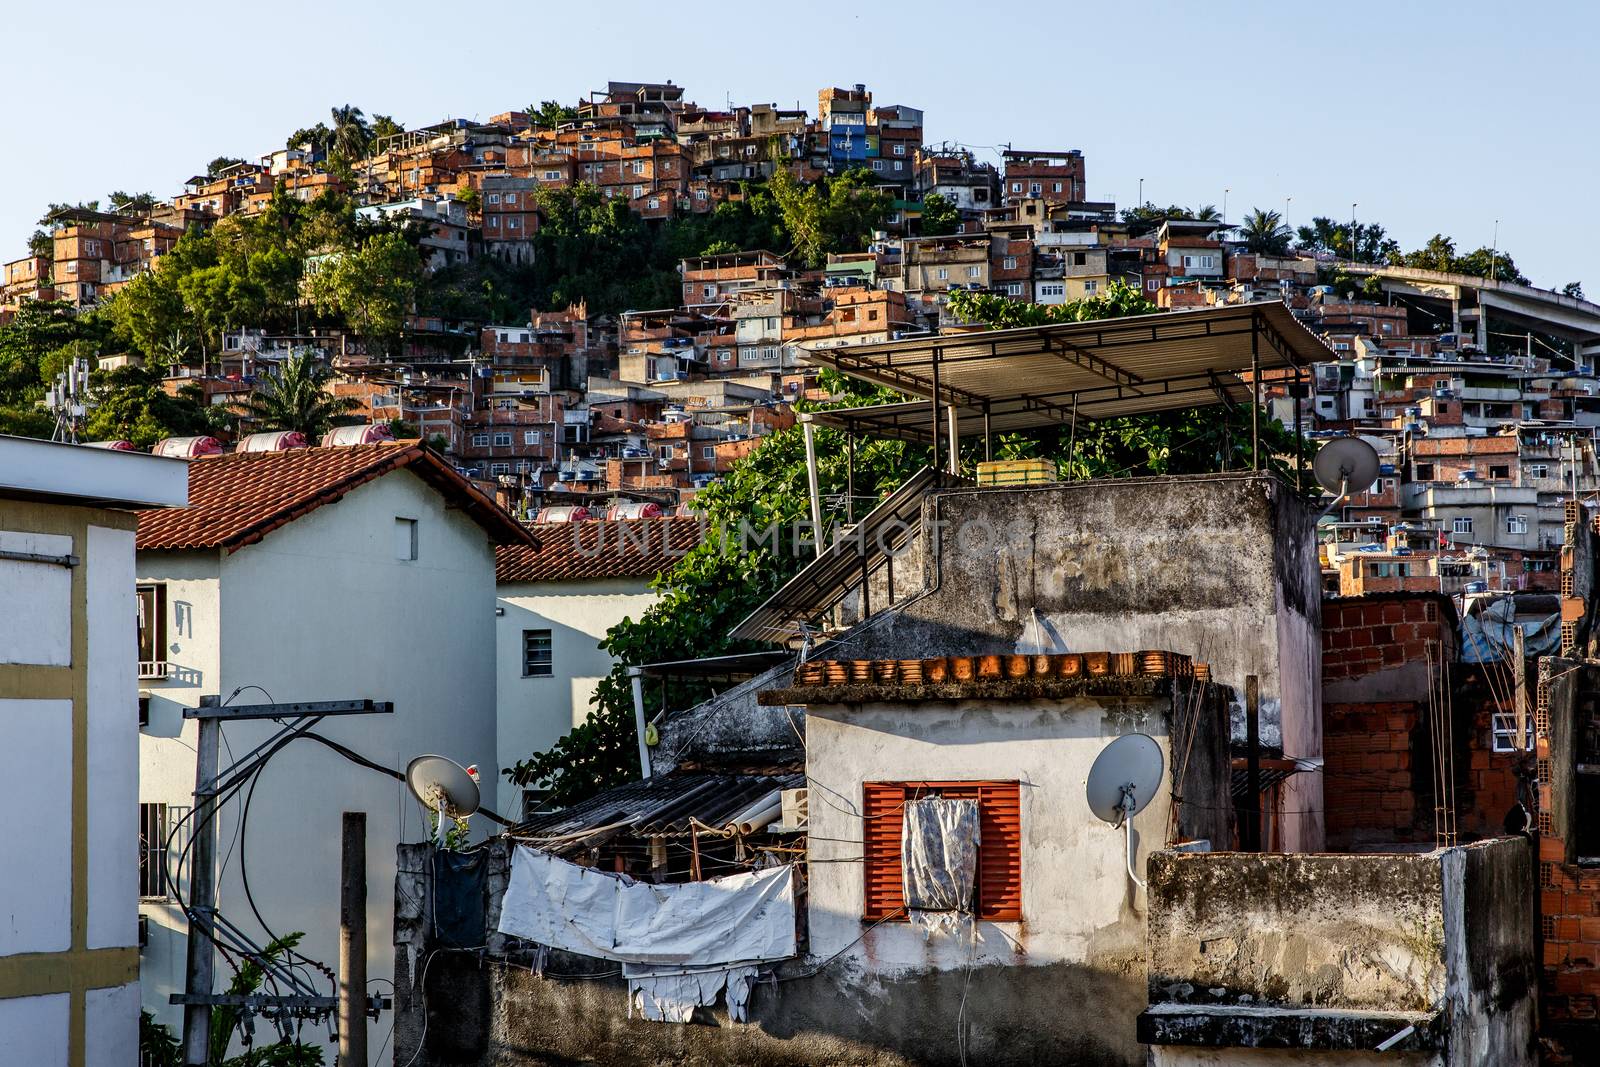 Favella in Rio de Janeiro, Brazil by 9parusnikov